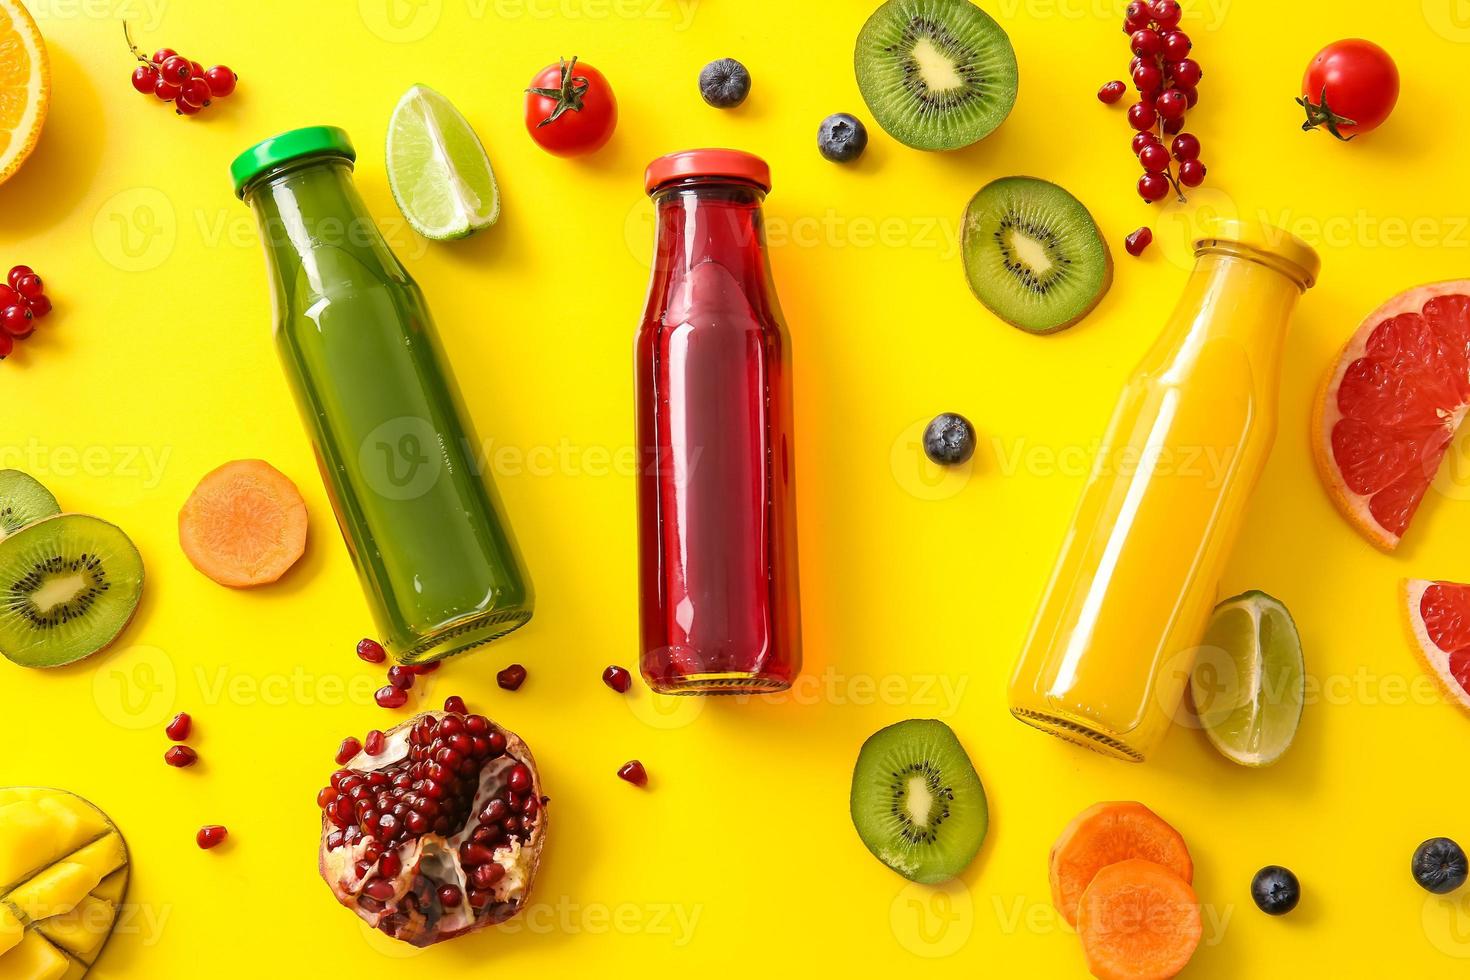 bottiglie con succo sano, frutta e verdura su sfondo colorato foto